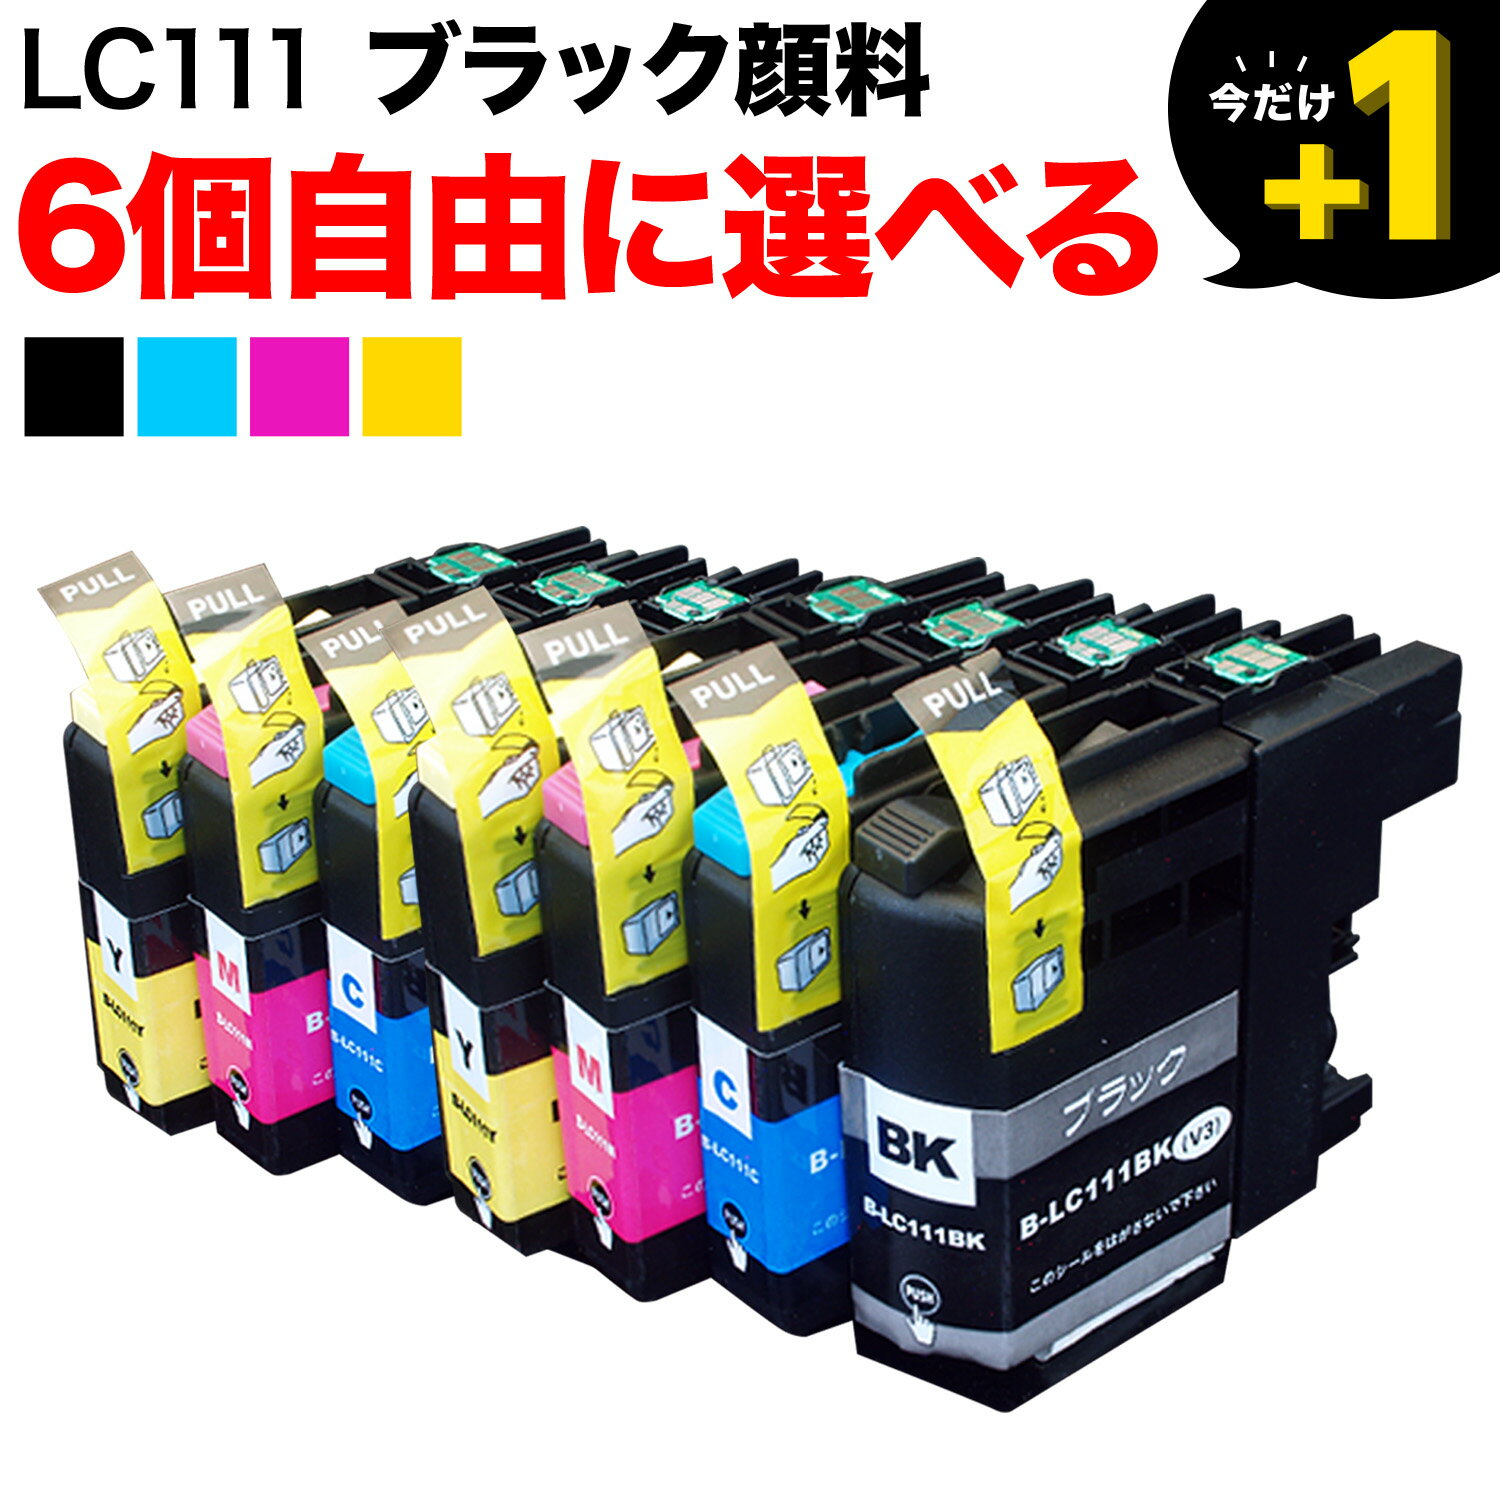 LC111 ブラザー用 互換インクカート